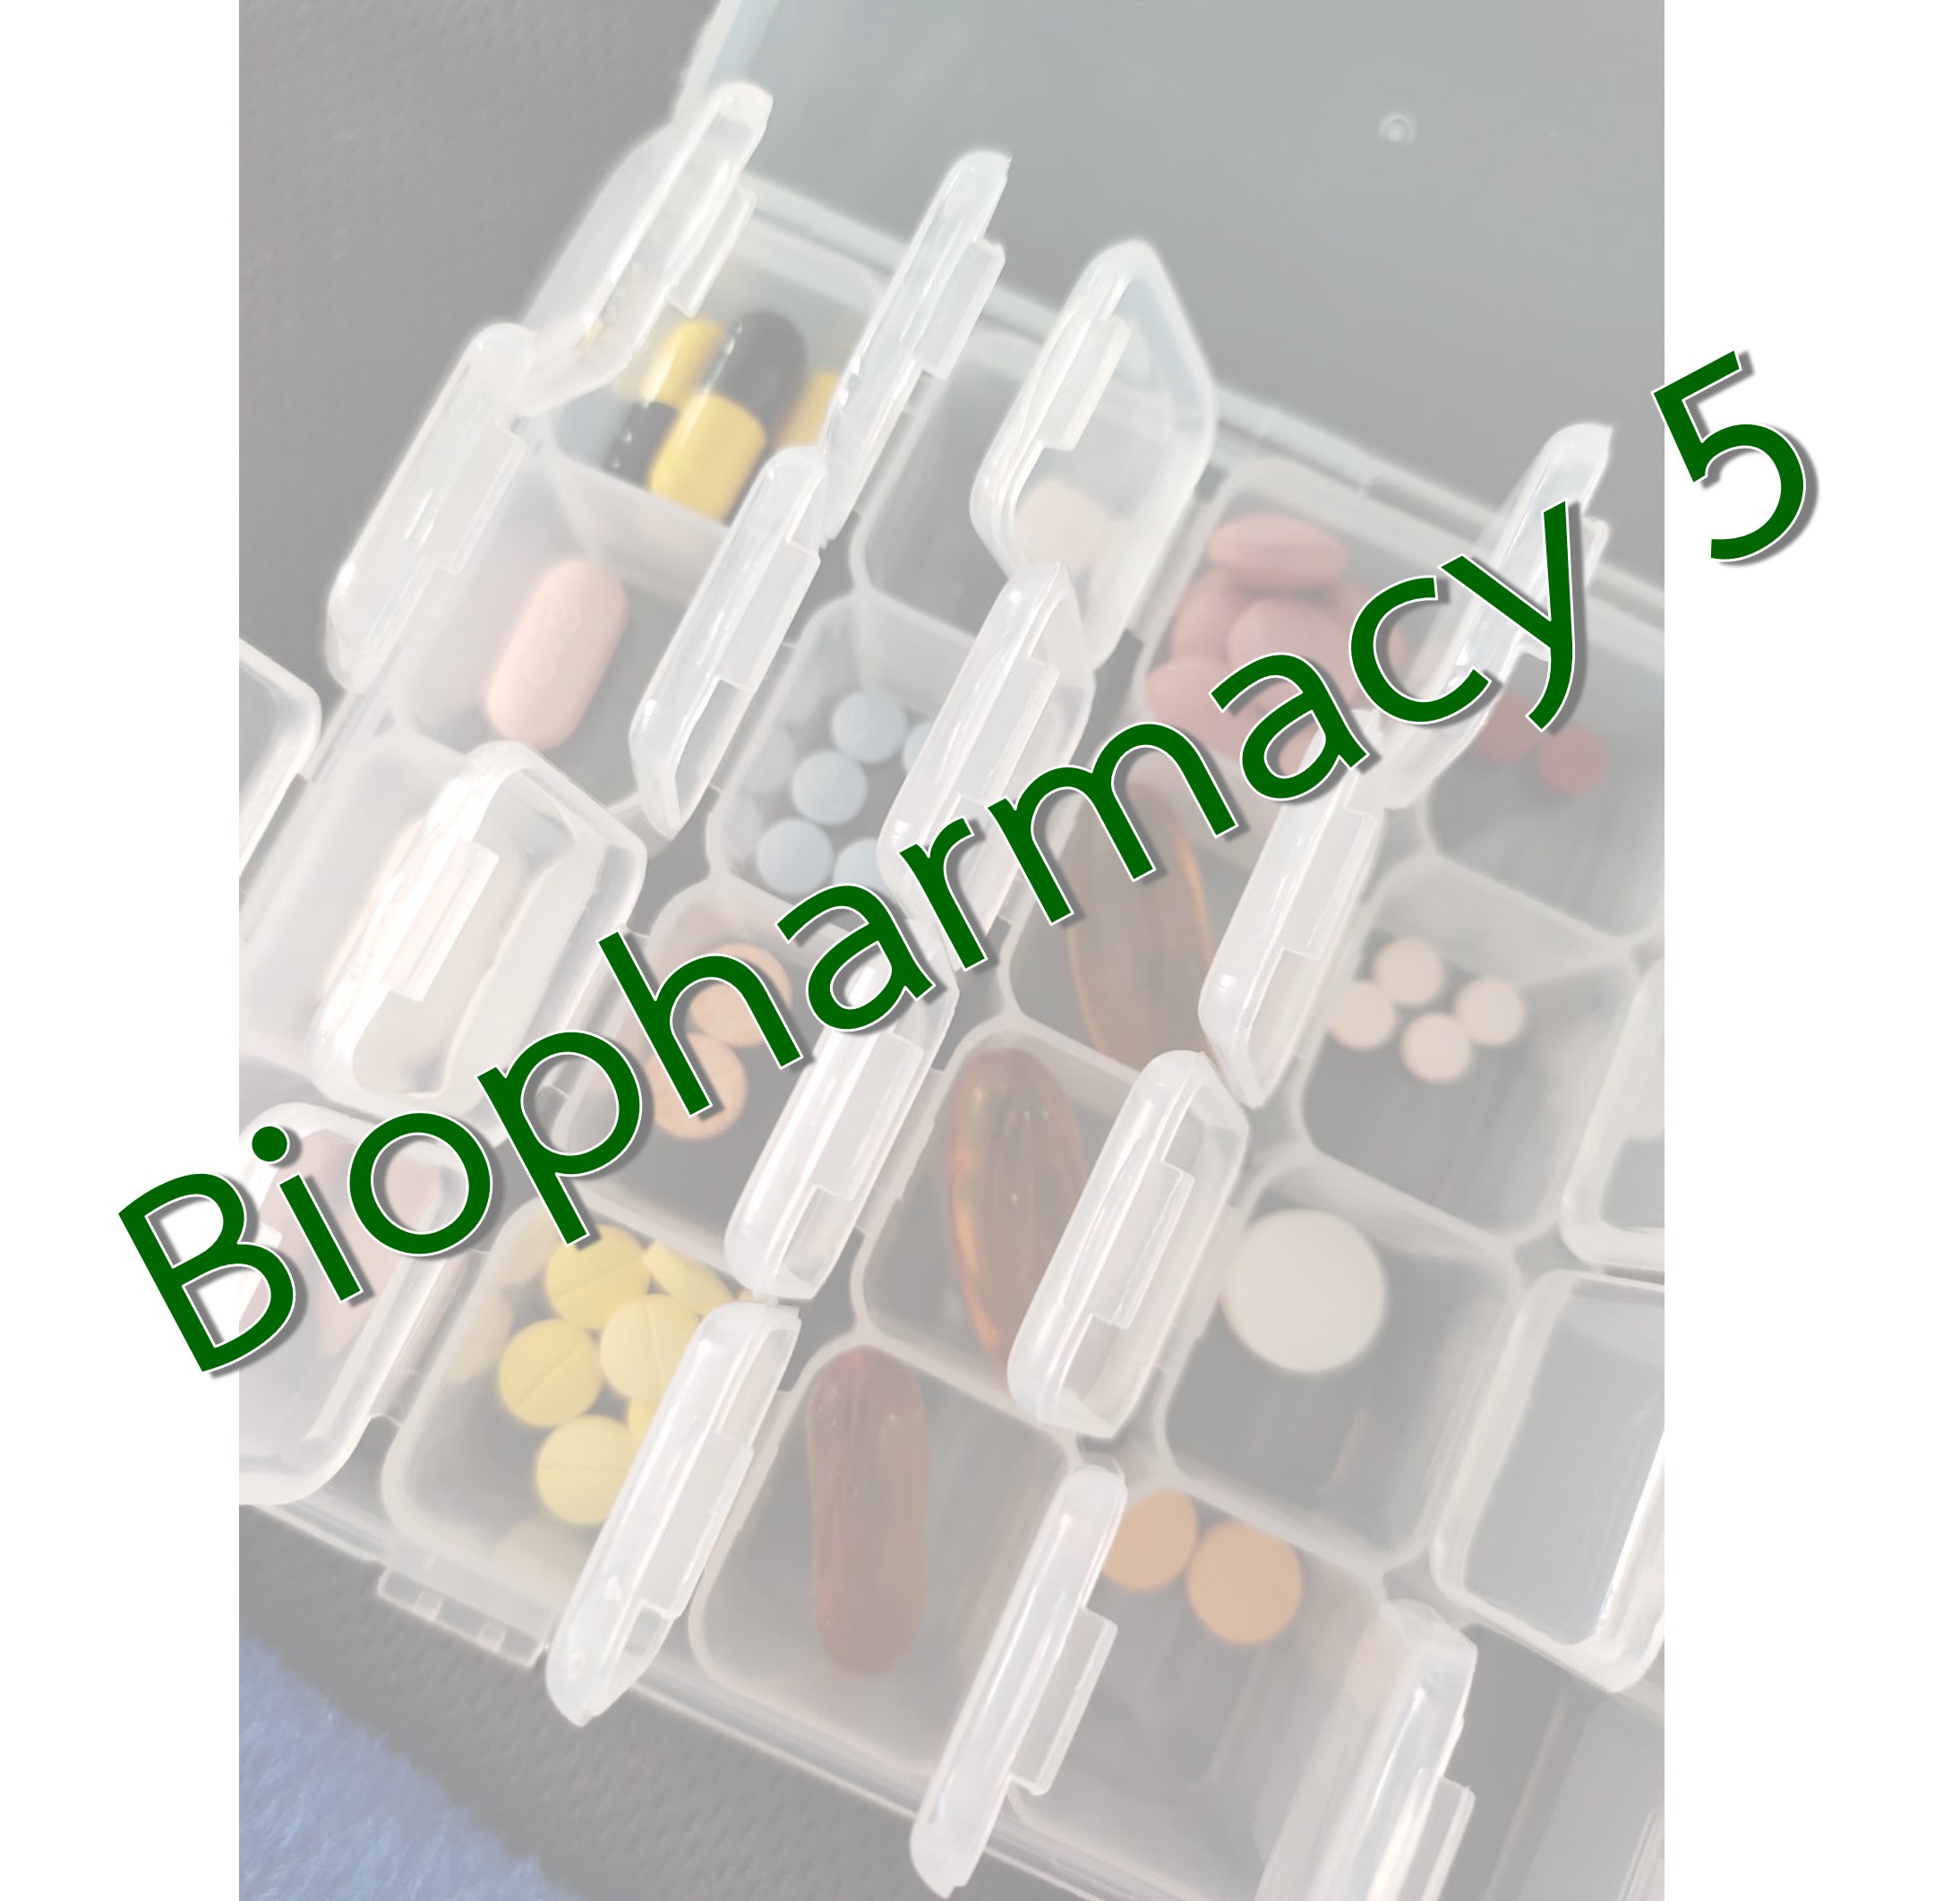 ฺBiopharmacy 5_2565 summer